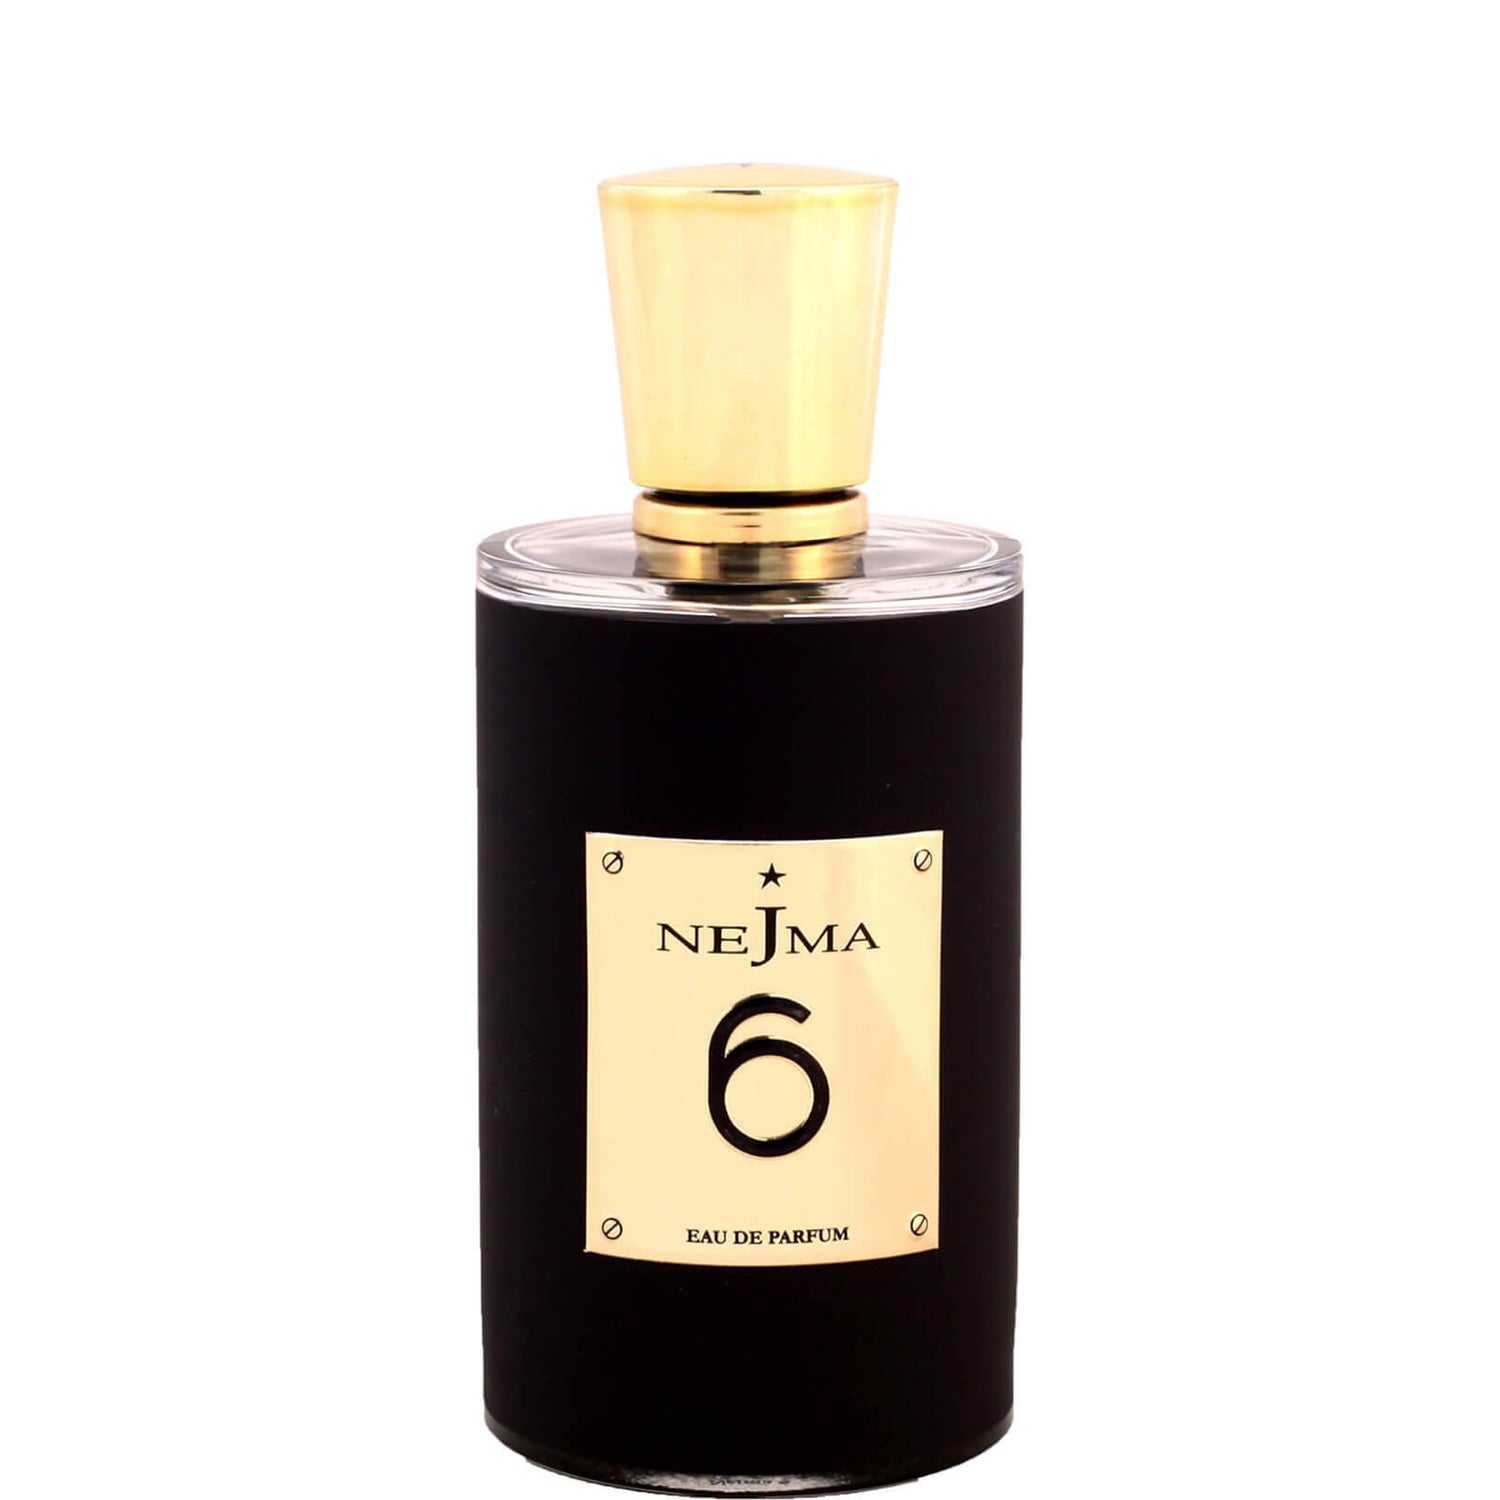 Nejma Collection 6 Eau de Parfum 100ml